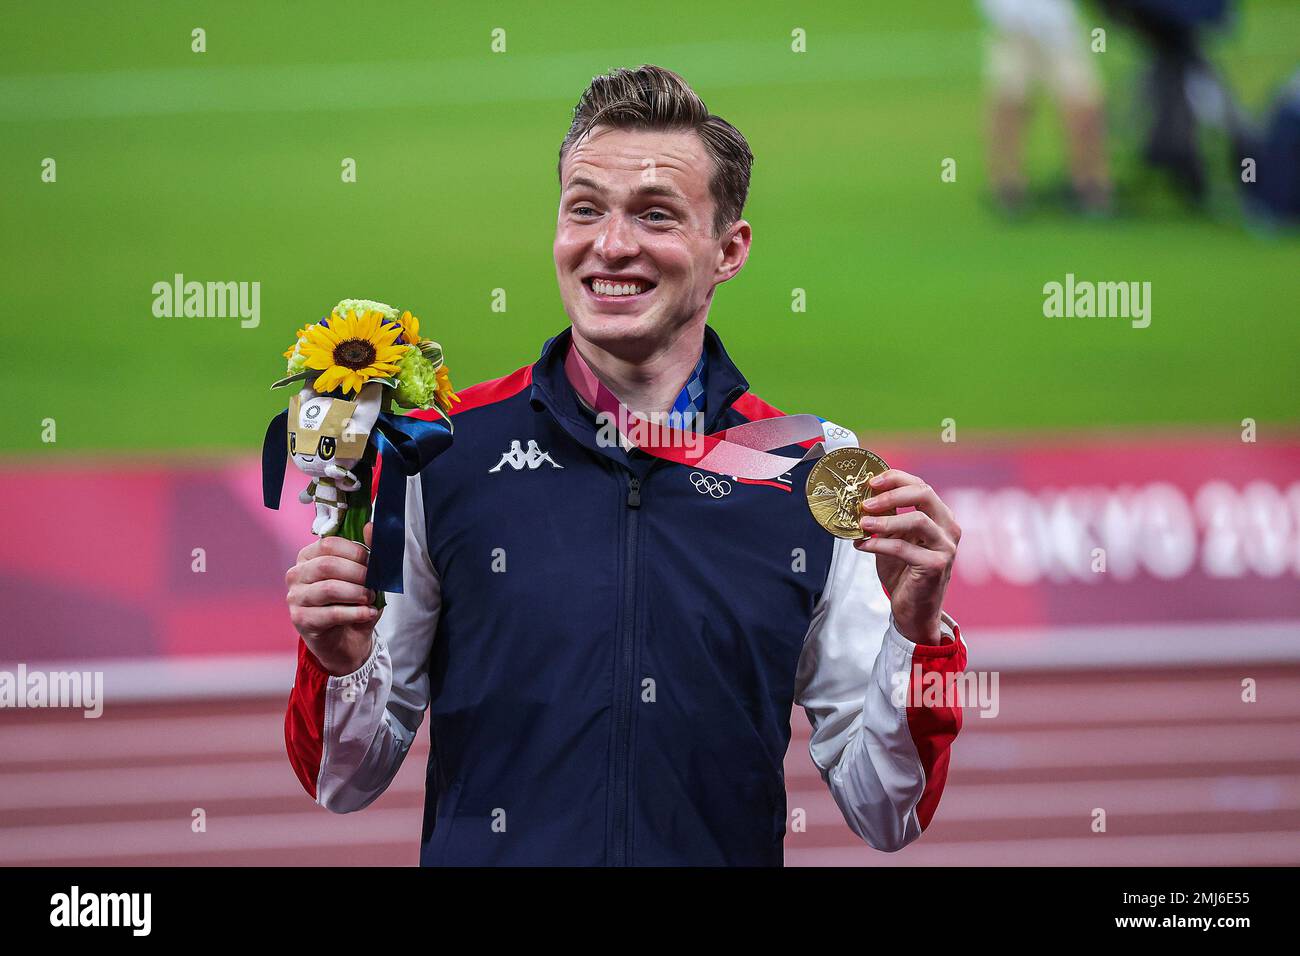 Karsten Warholm (NOR) Champion olympique des 400 mètres haies des hommes aux Jeux Olympiques d'été de 2020 (2021), Tokyo, Japon Banque D'Images